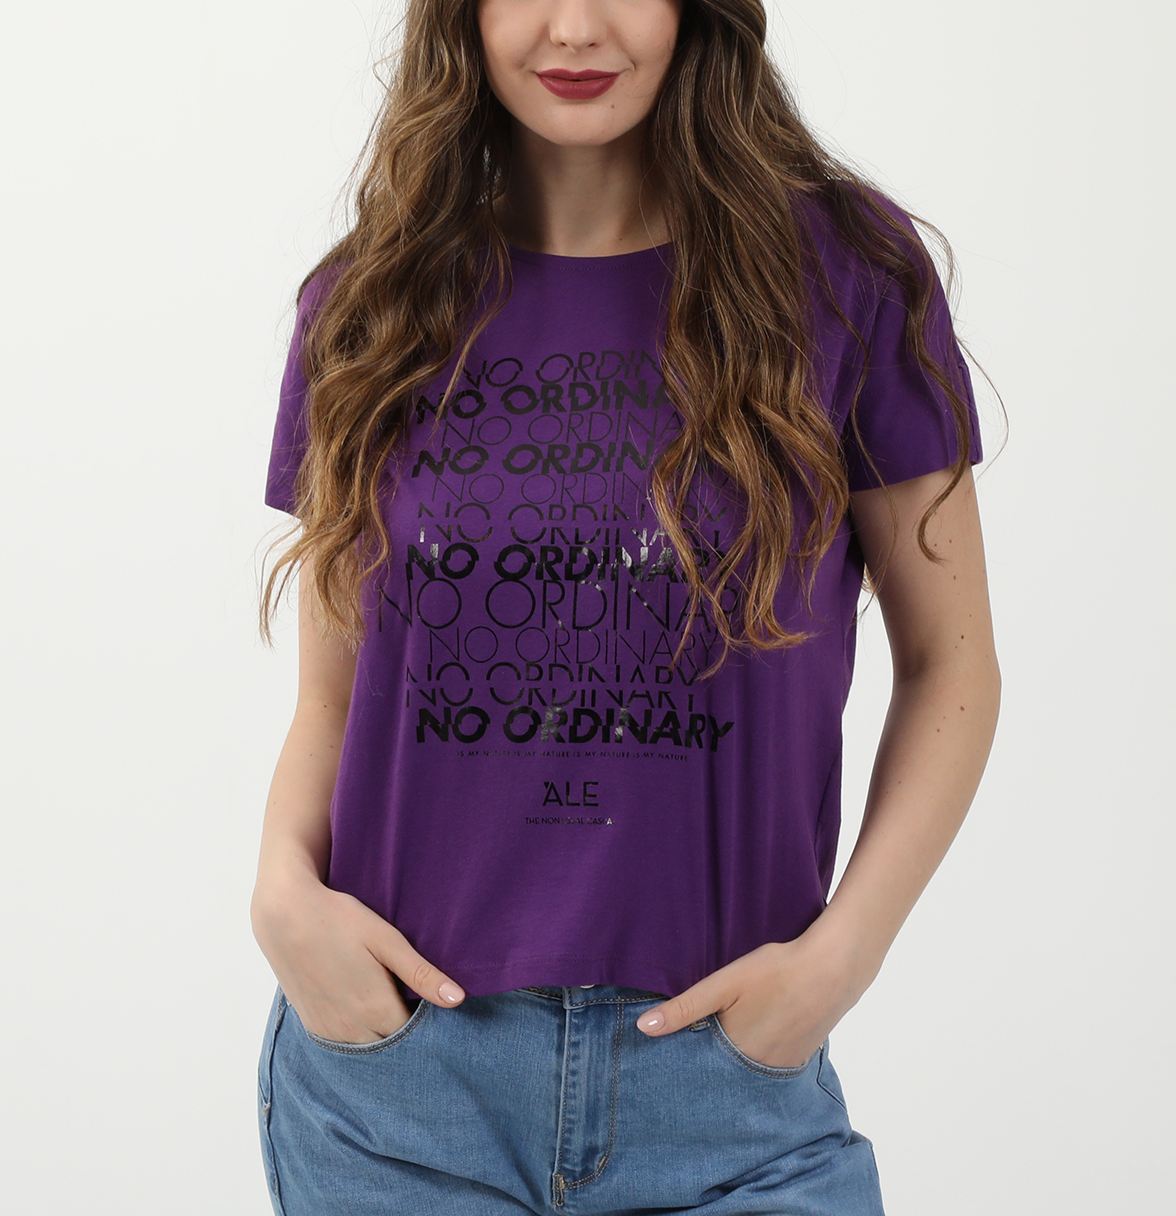 Γυναικεία/Ρούχα/Μπλούζες/Κοντομάνικες 'ALE - Γυναικείο t-shirt 'ALE μοβ